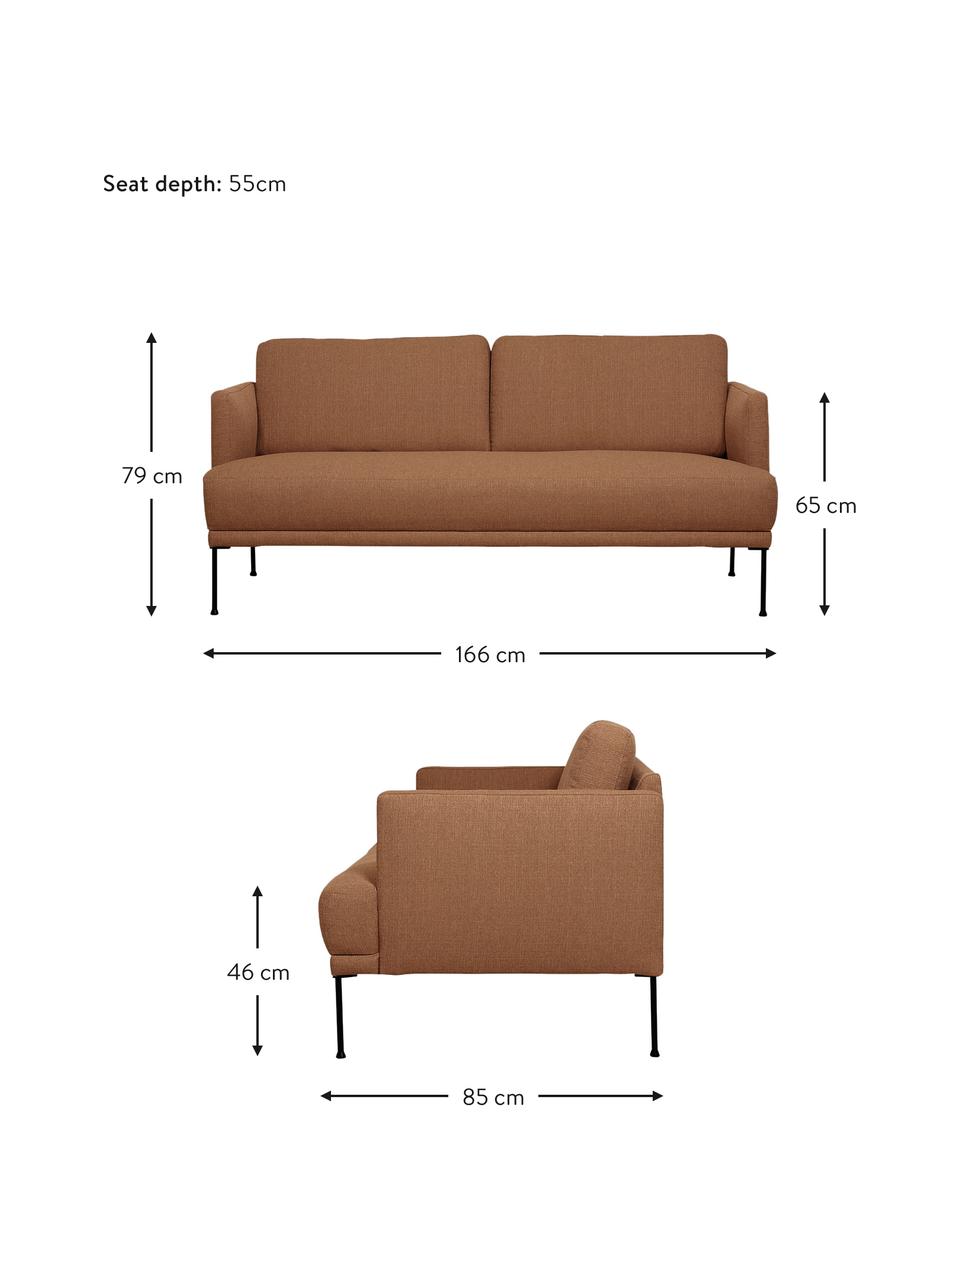 Sofa Fluente (2-Sitzer) in Nougat mit Metall-Füßen, Bezug: 100% Polyester 35.000 Sch, Gestell: Massives Kiefernholz, Füße: Metall, pulverbeschichtet, Webstoff Nougat, B 166 x T 85 cm